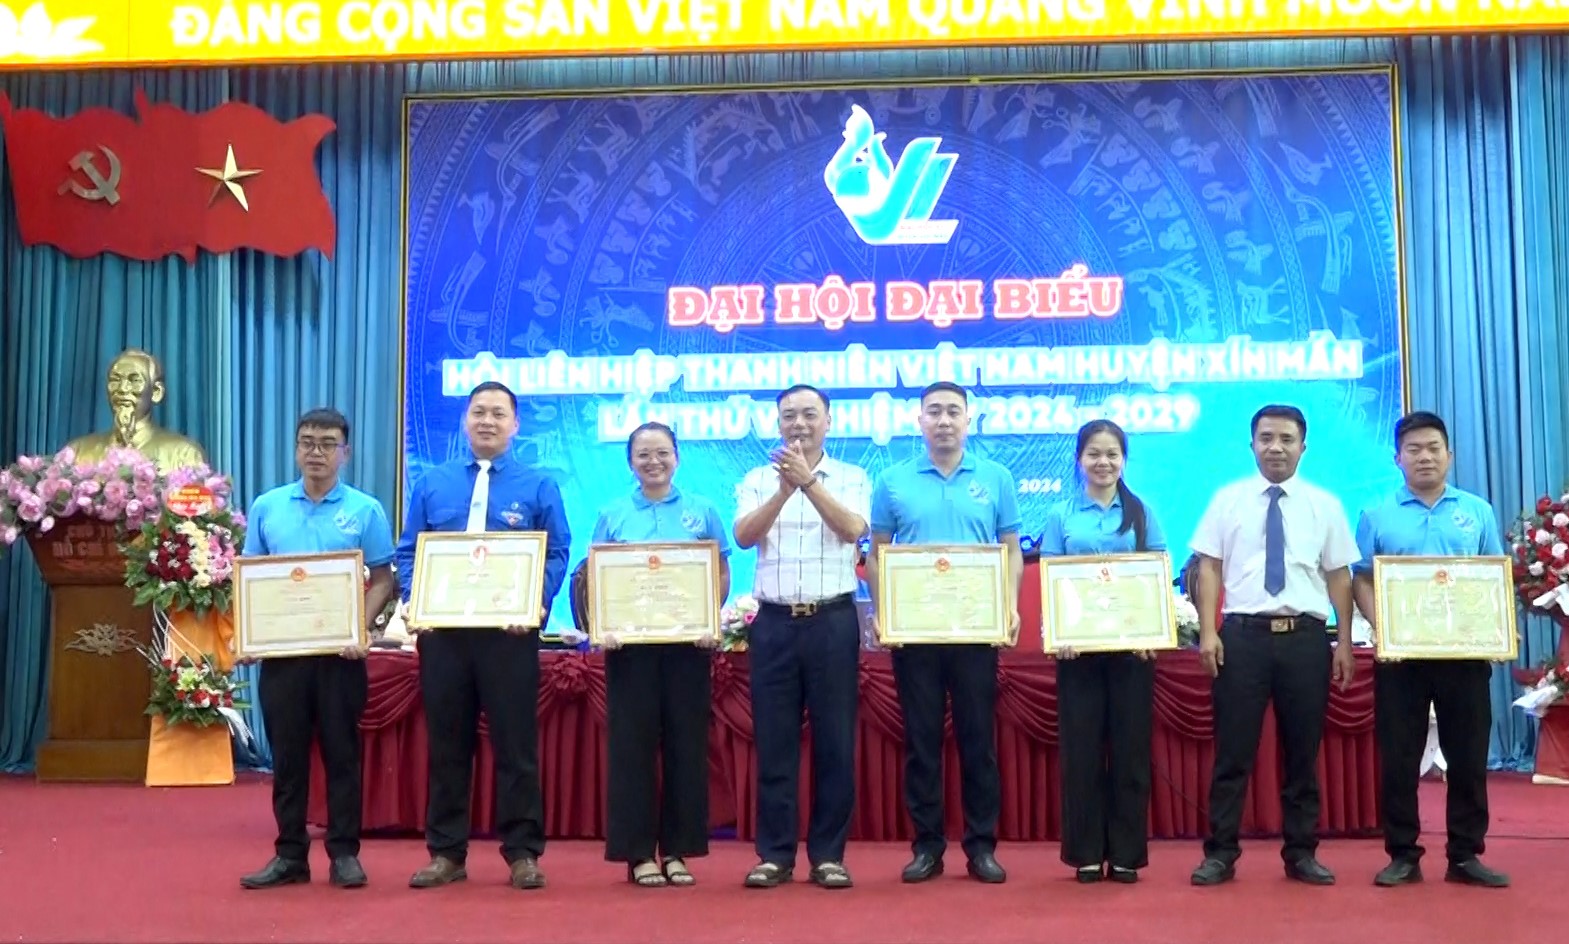 Lãnh đạo huyện Xín Mần khen thưởng cho các cá nhân có thành tích xuất sắc trong công tác Hội nhiệm kỳ 2019 - 2024.